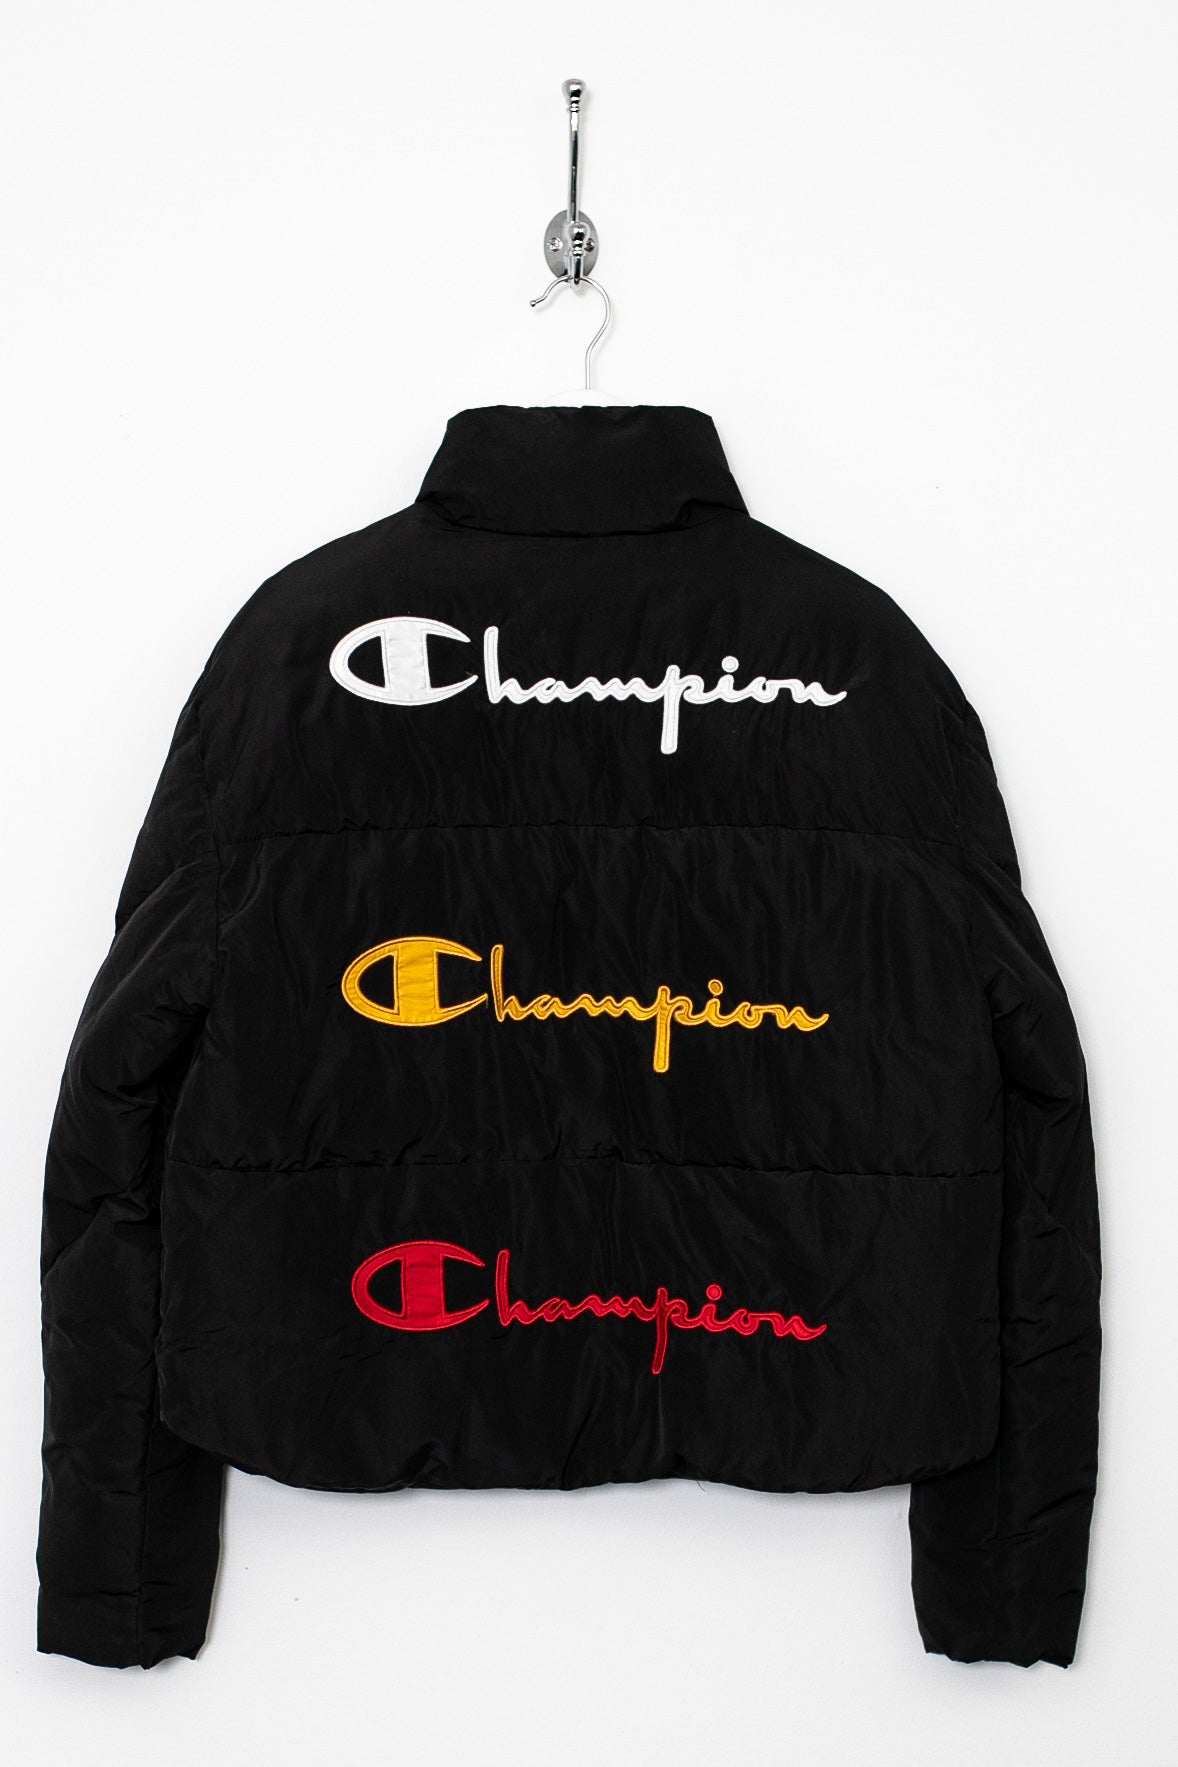 Womens Champion Puffer Jacket (S)